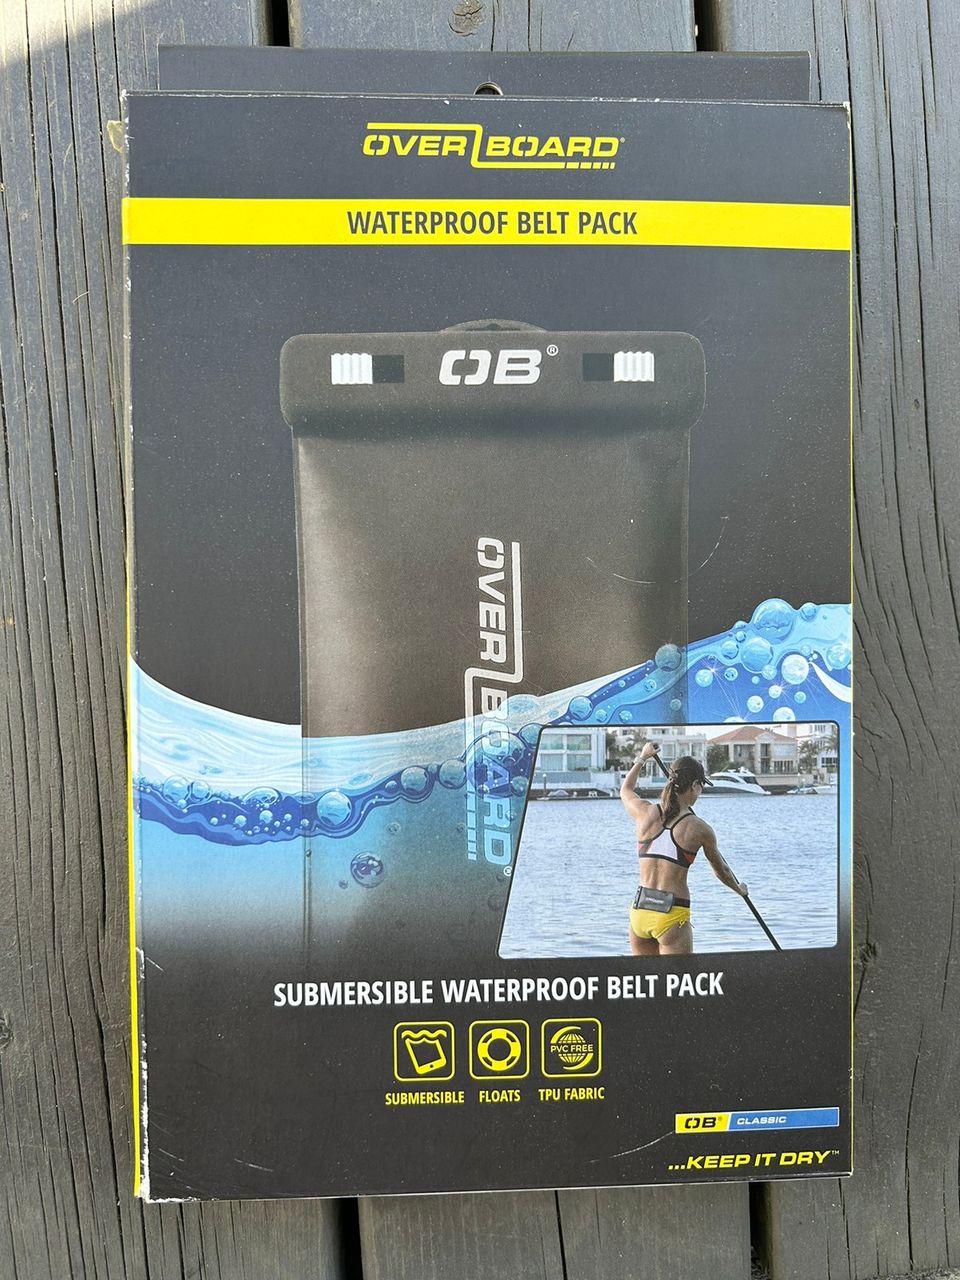 Overboard waterproof belt pack